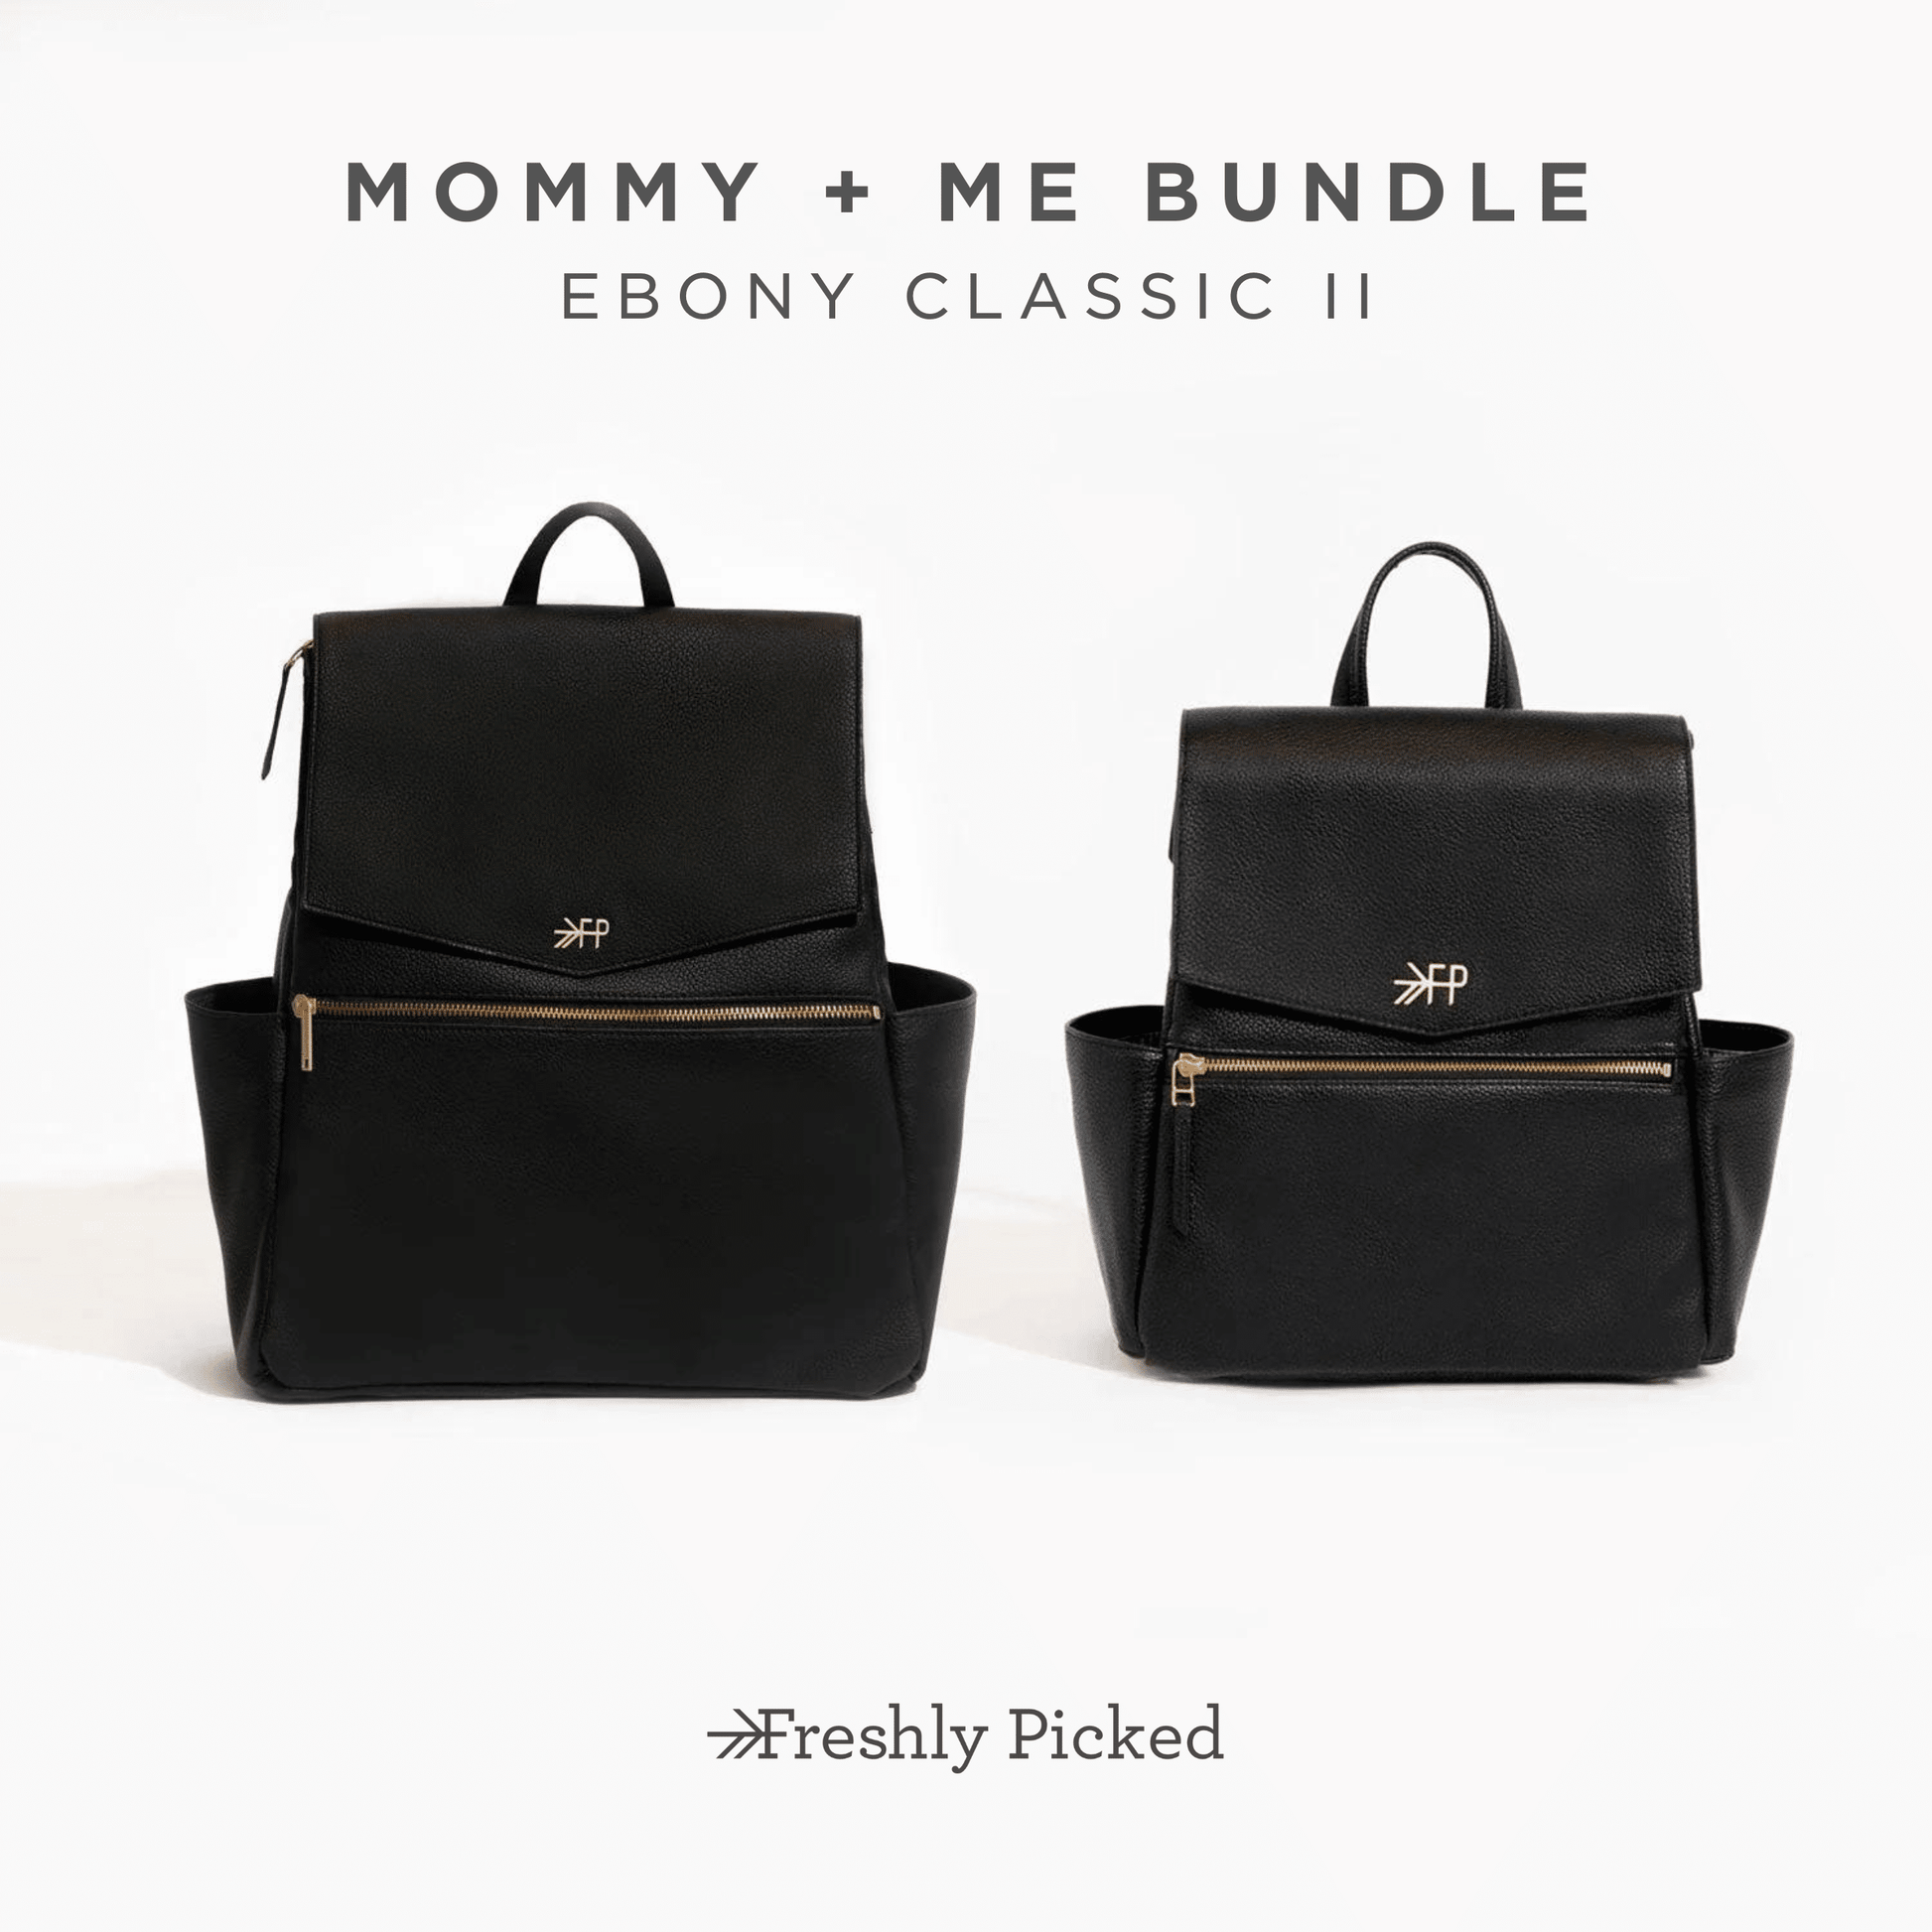 Mommy + Me Bundle Bundles of Joy Bundles of Joy Ebony Classic II 